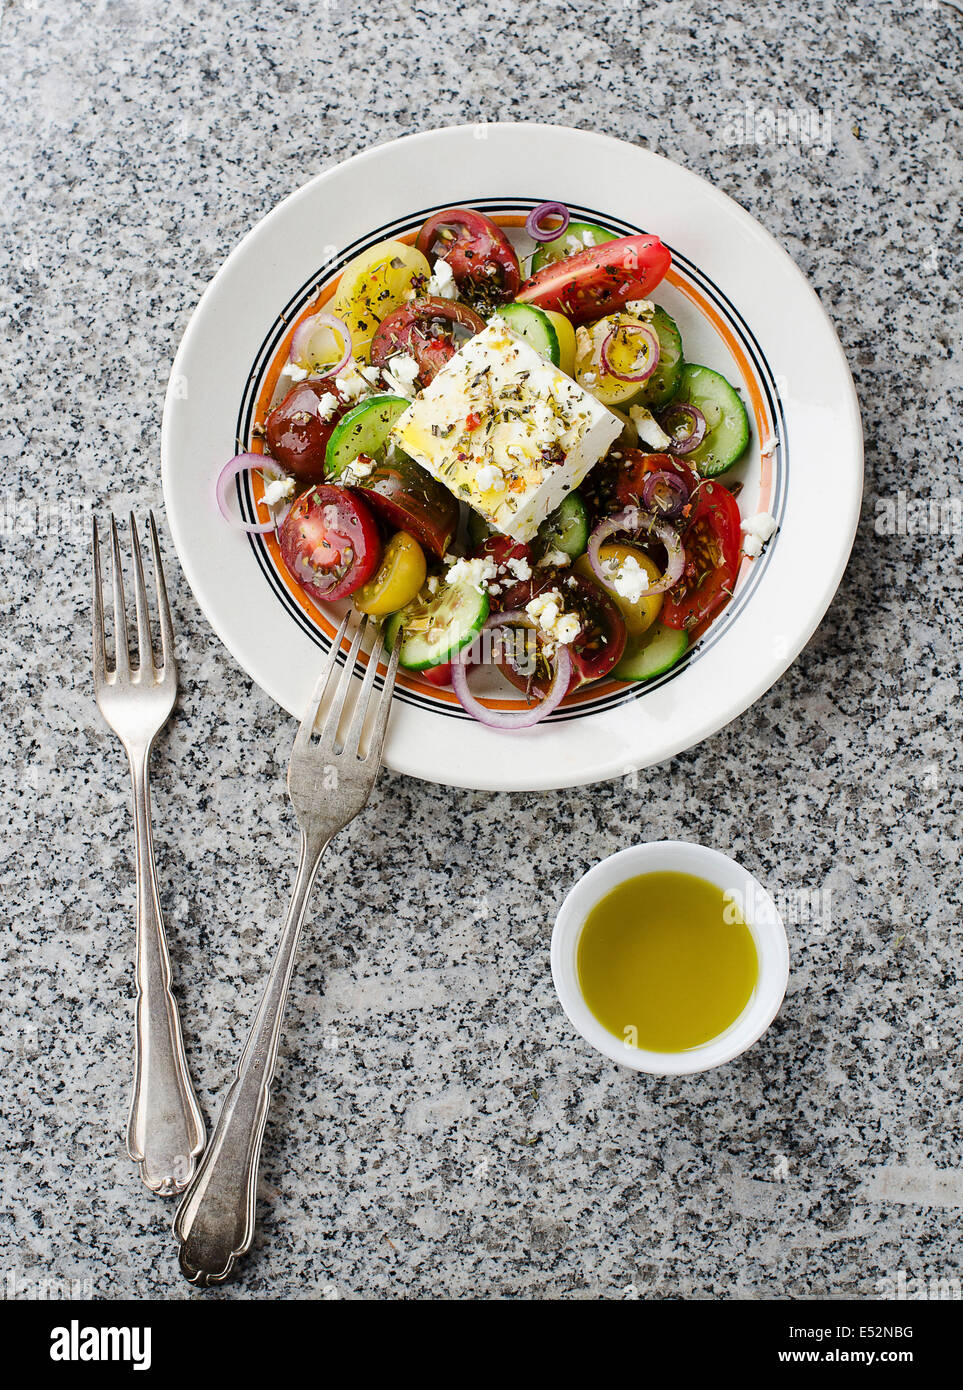 Salade grecque à la feta Banque D'Images